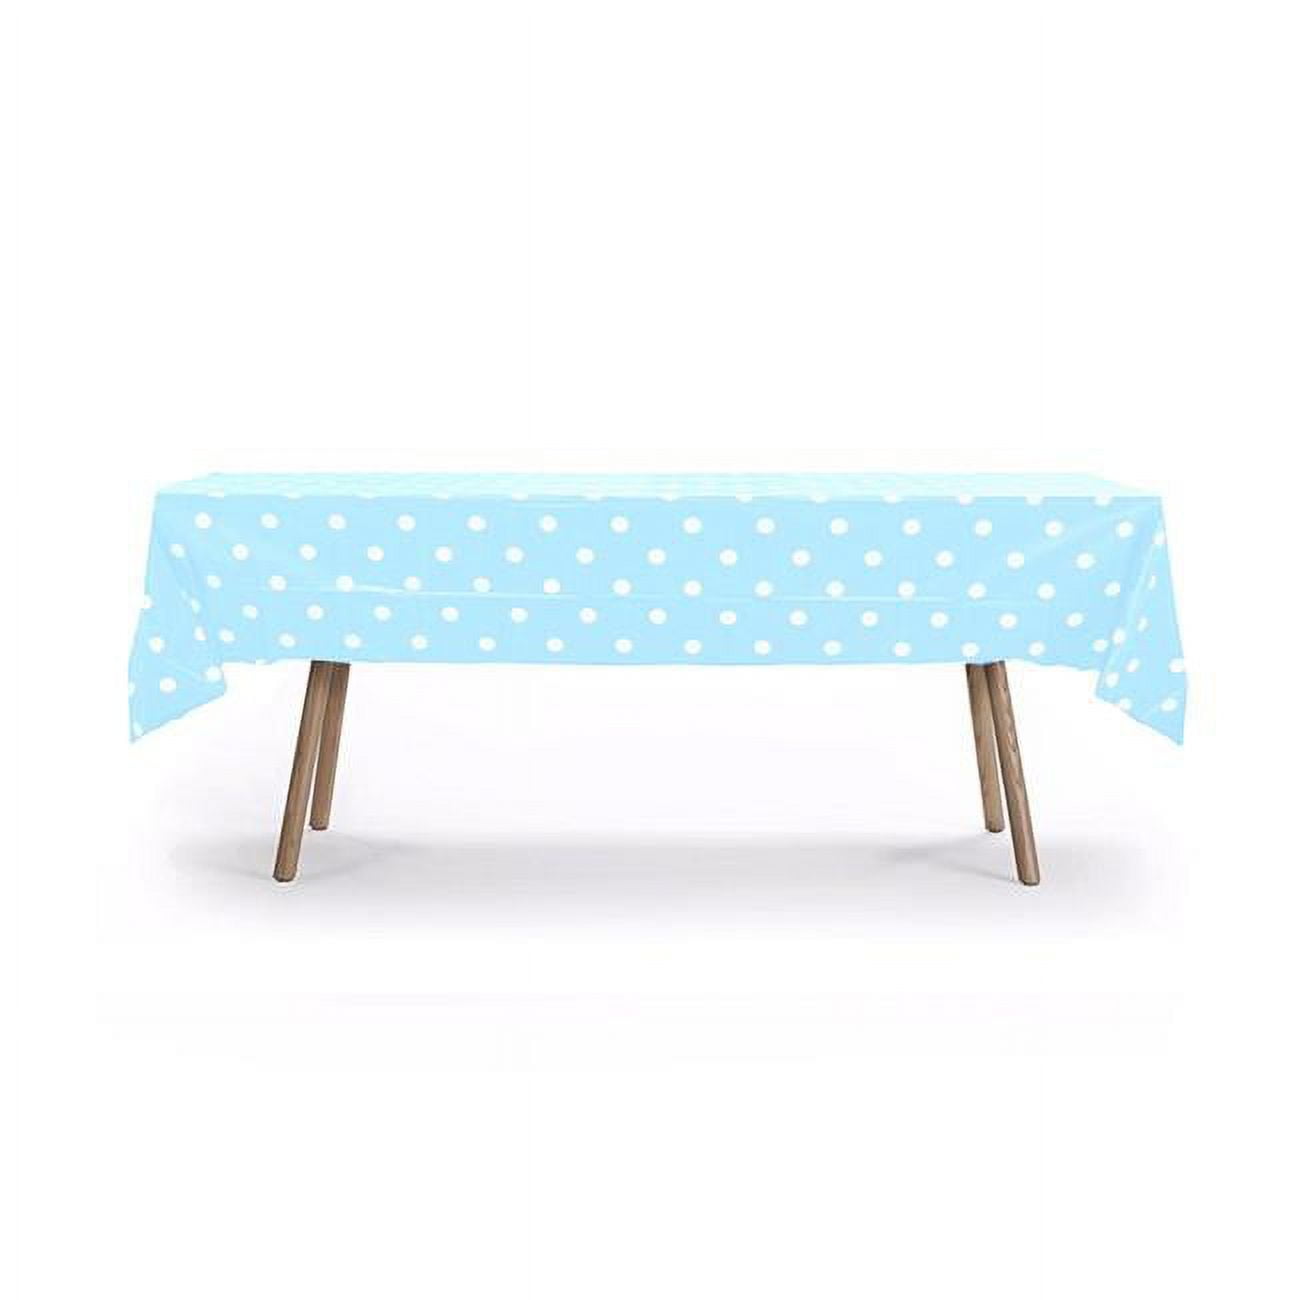 Herramienta Polka Dot Rectangle Table Cover, Light Blue - Case of 19